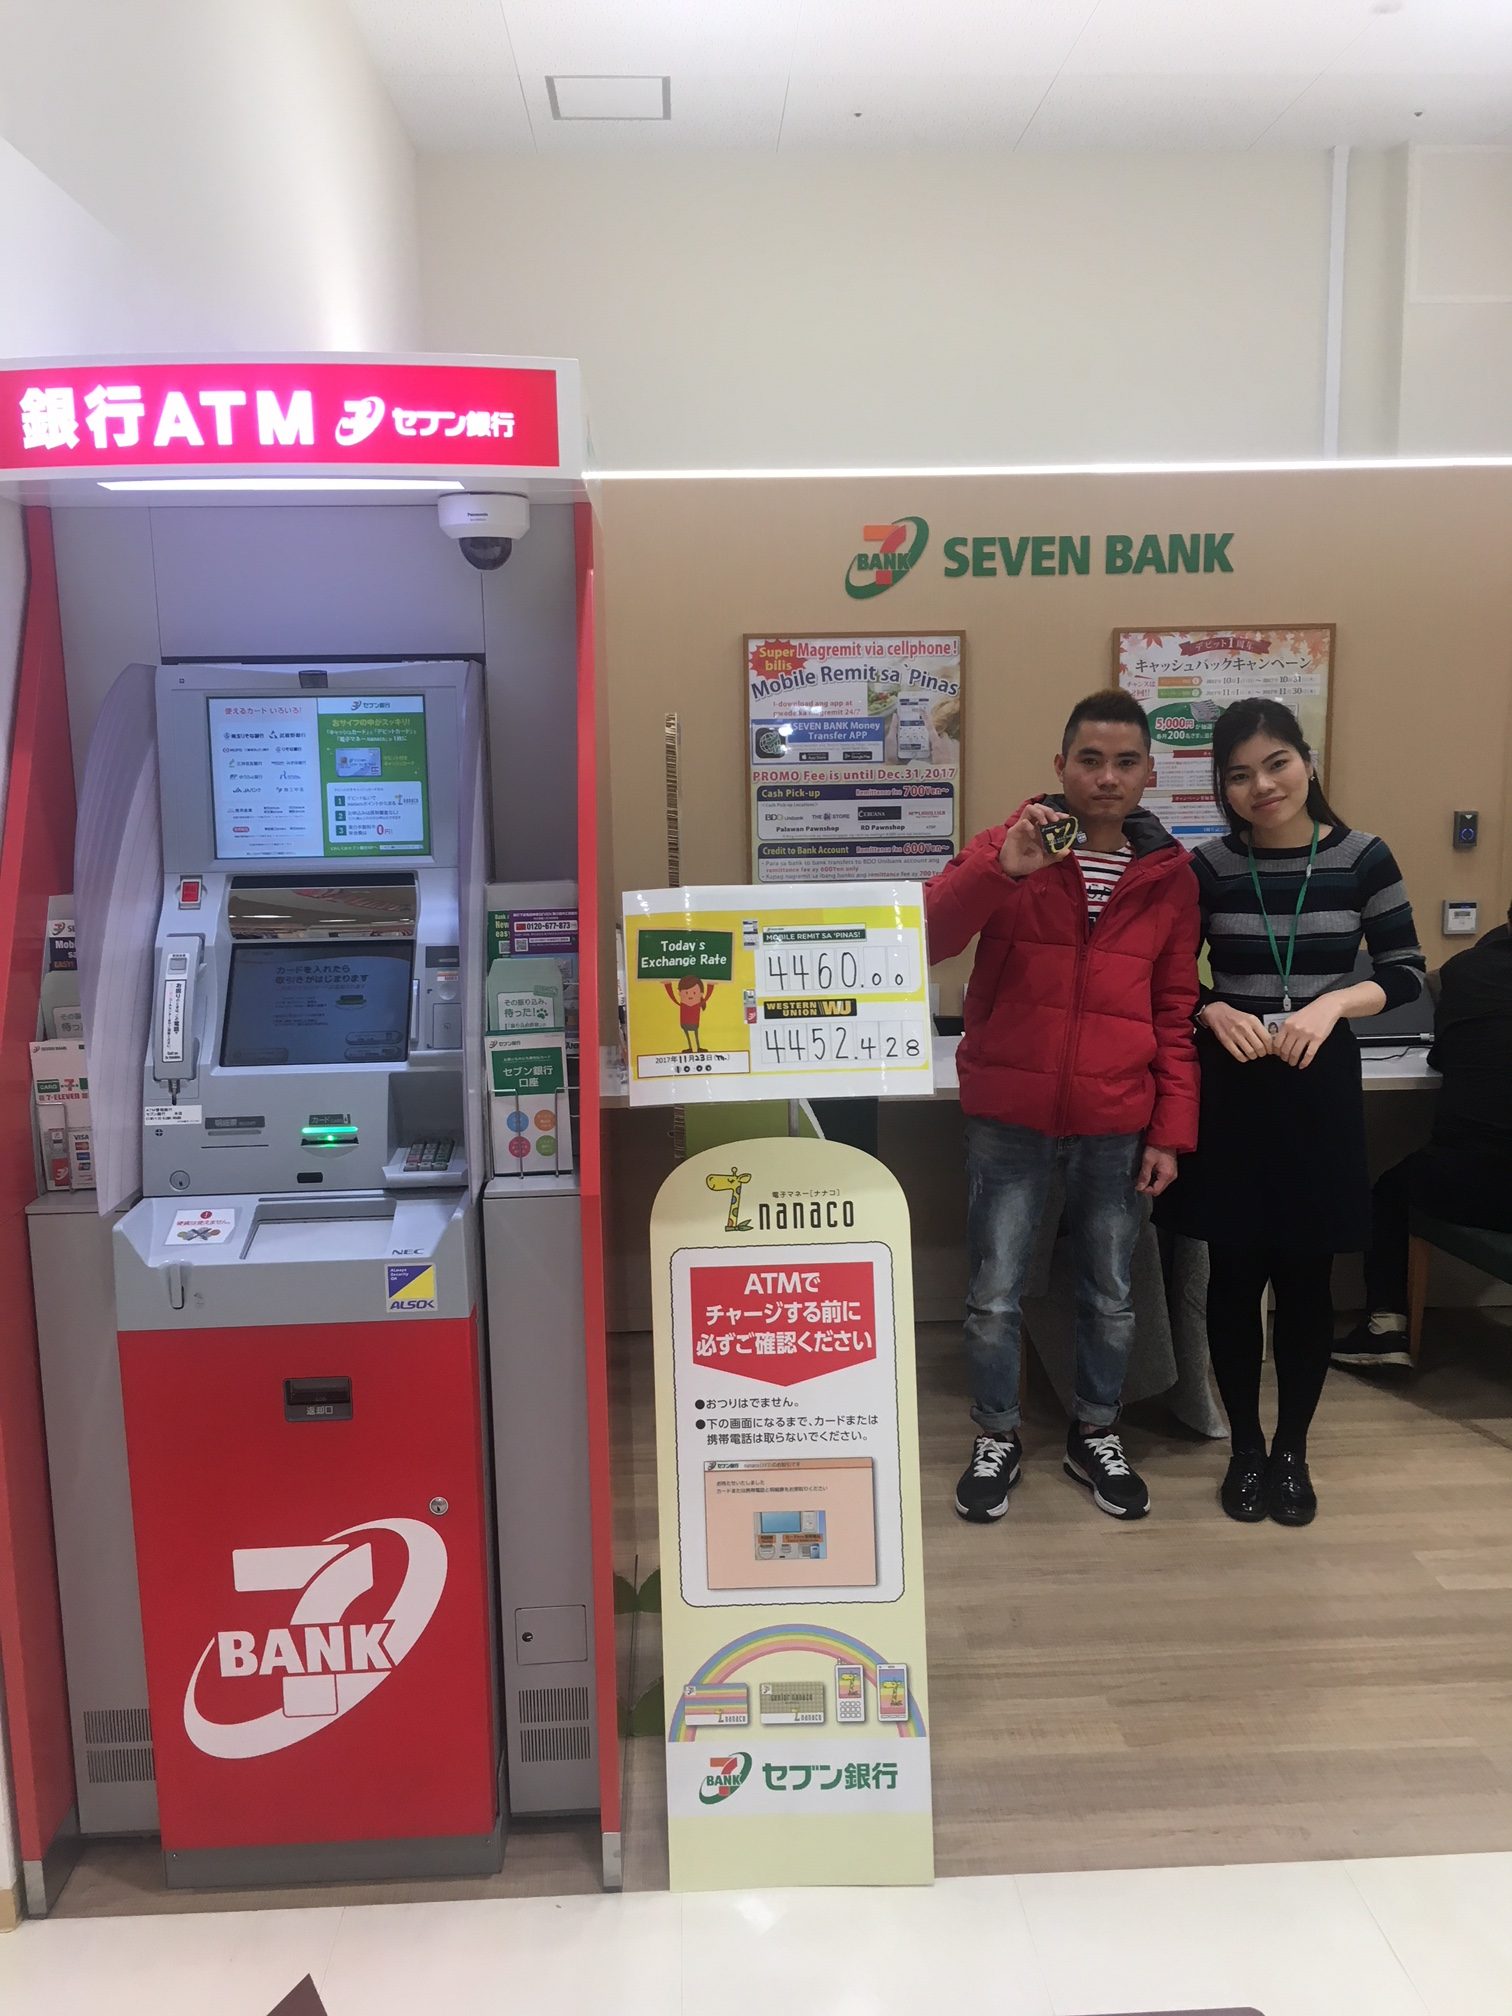 ATM của Seven Bank có hiển thị tiếng Việt